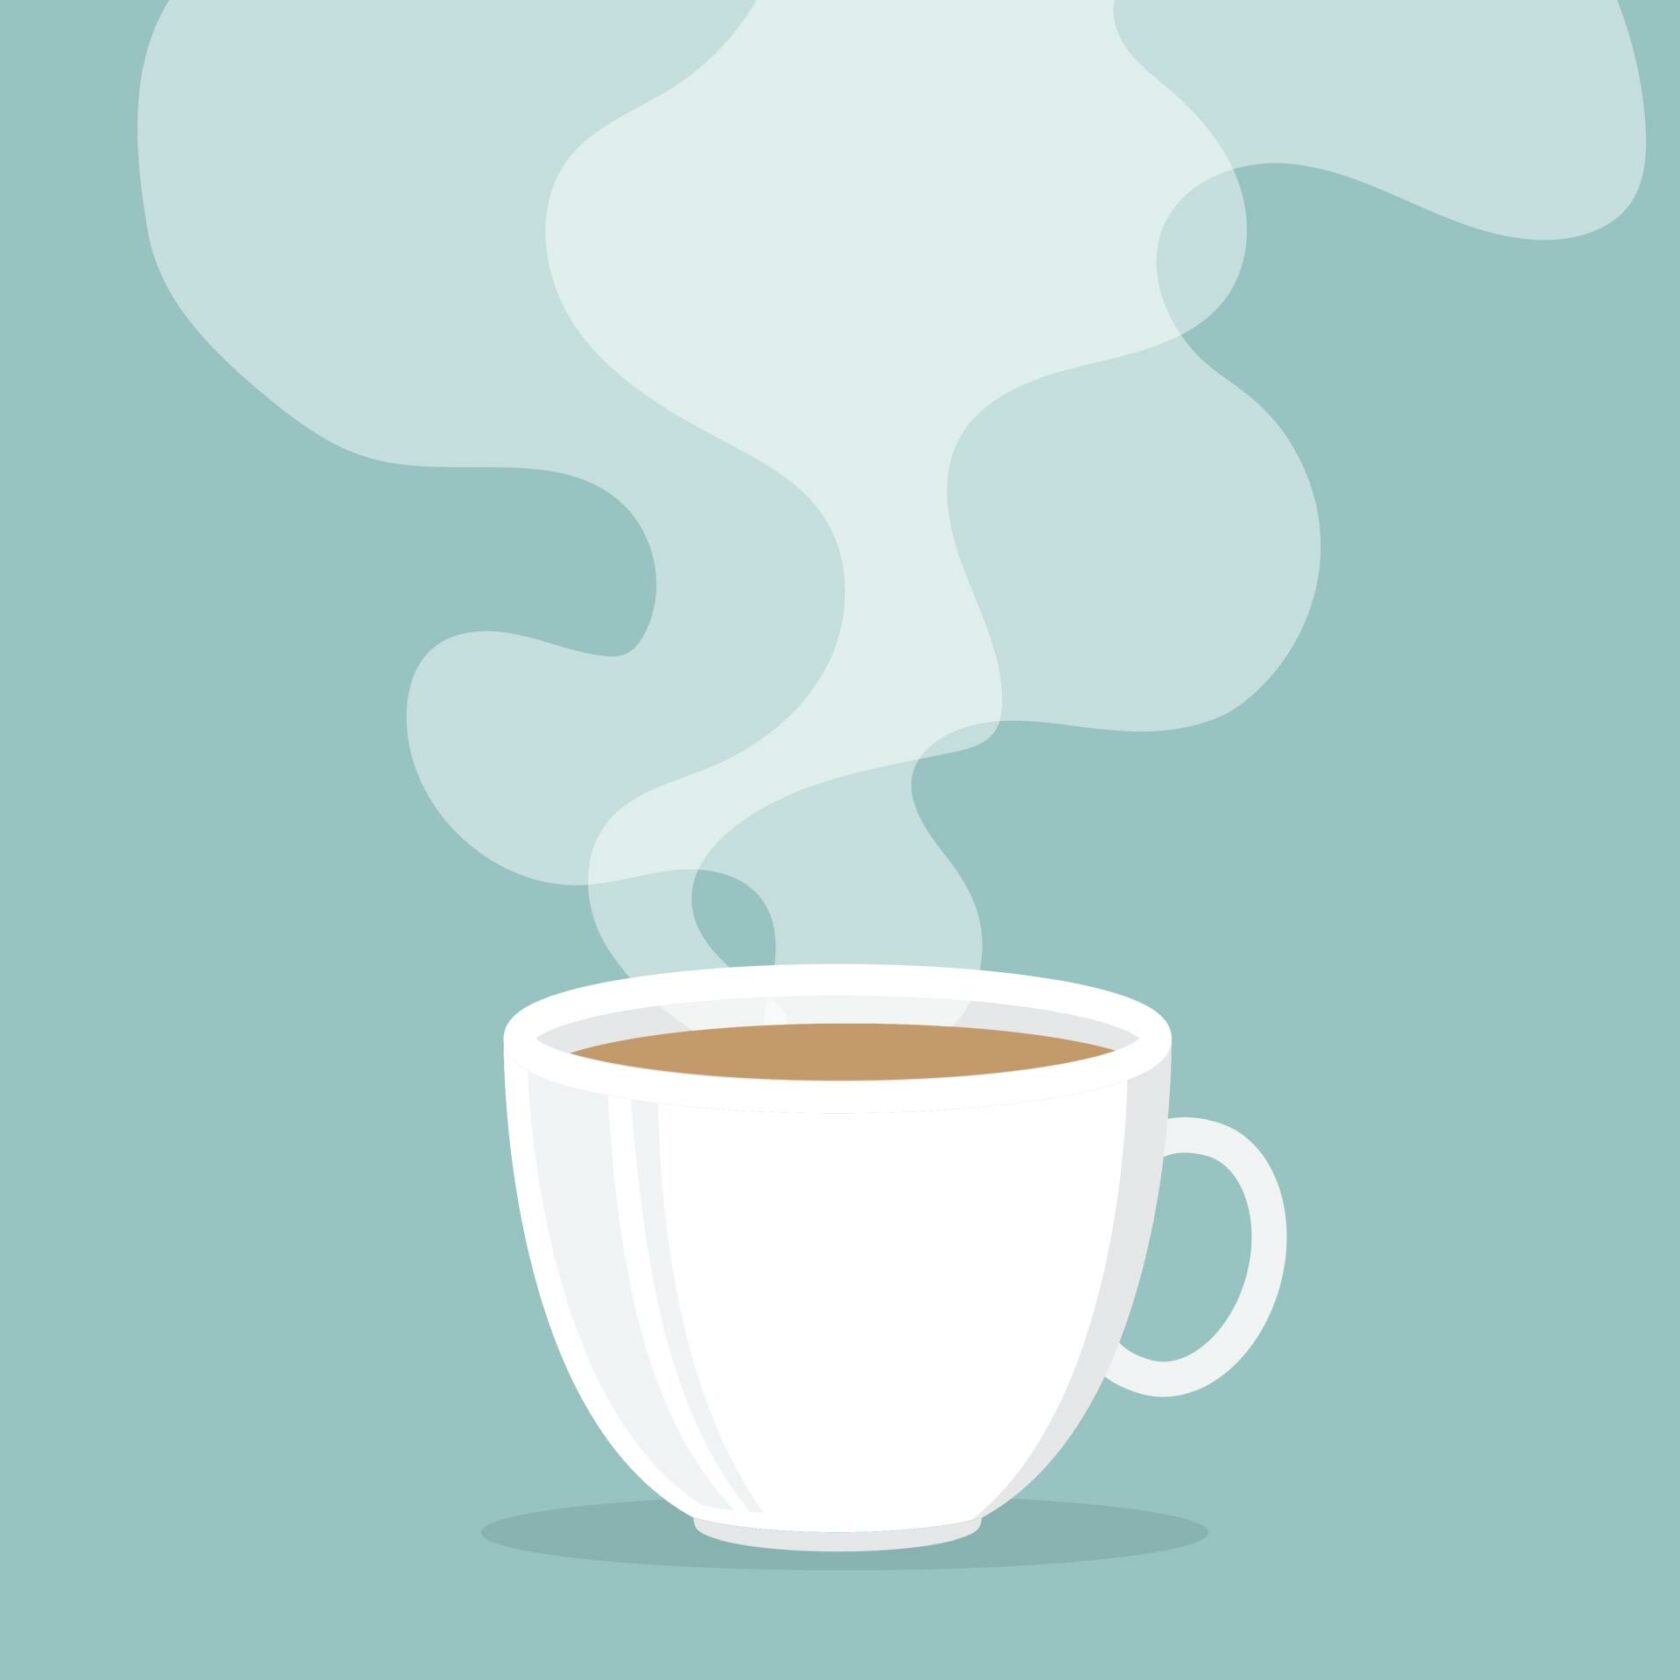 Flat-Darstellung einer Tasse mit dampfendem Kaffee